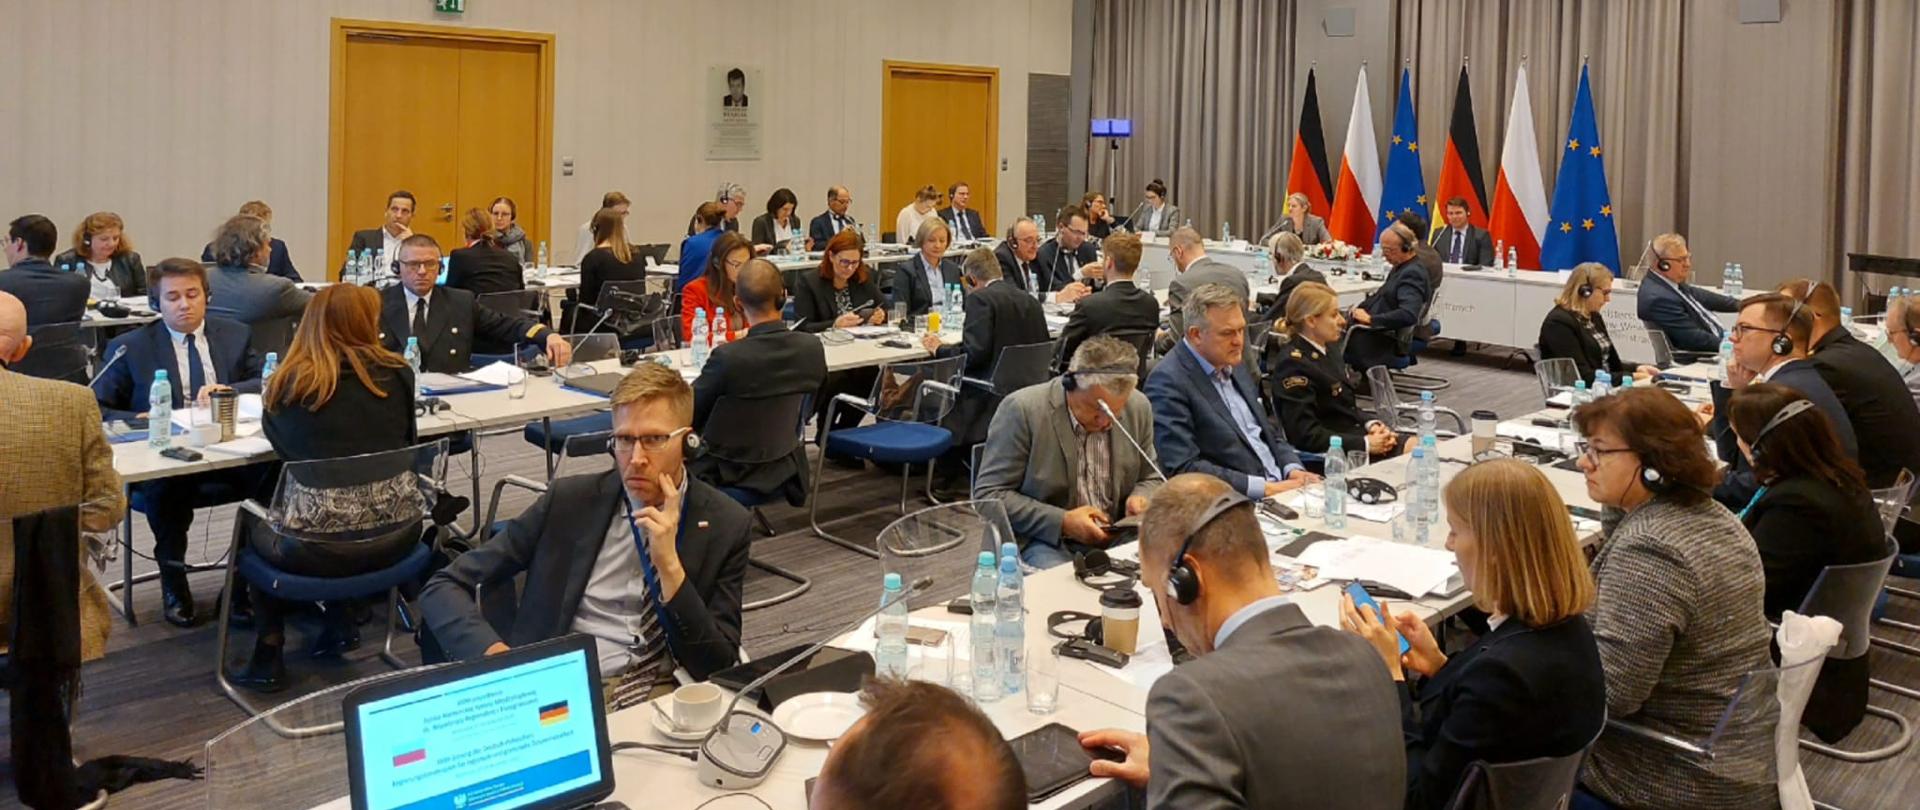 Widok ogólny na sale w której odbywa się posiedzenie Polsko-Niemieckiej Komisji Miedzyrządowej ds. Współpracy Regionalnej i Przygranicznej. Osoby siedzące przy stołach, w tle stolik prezydialny za którym widoczne są flagi Polski, Niemiec i Unii Europejskiej